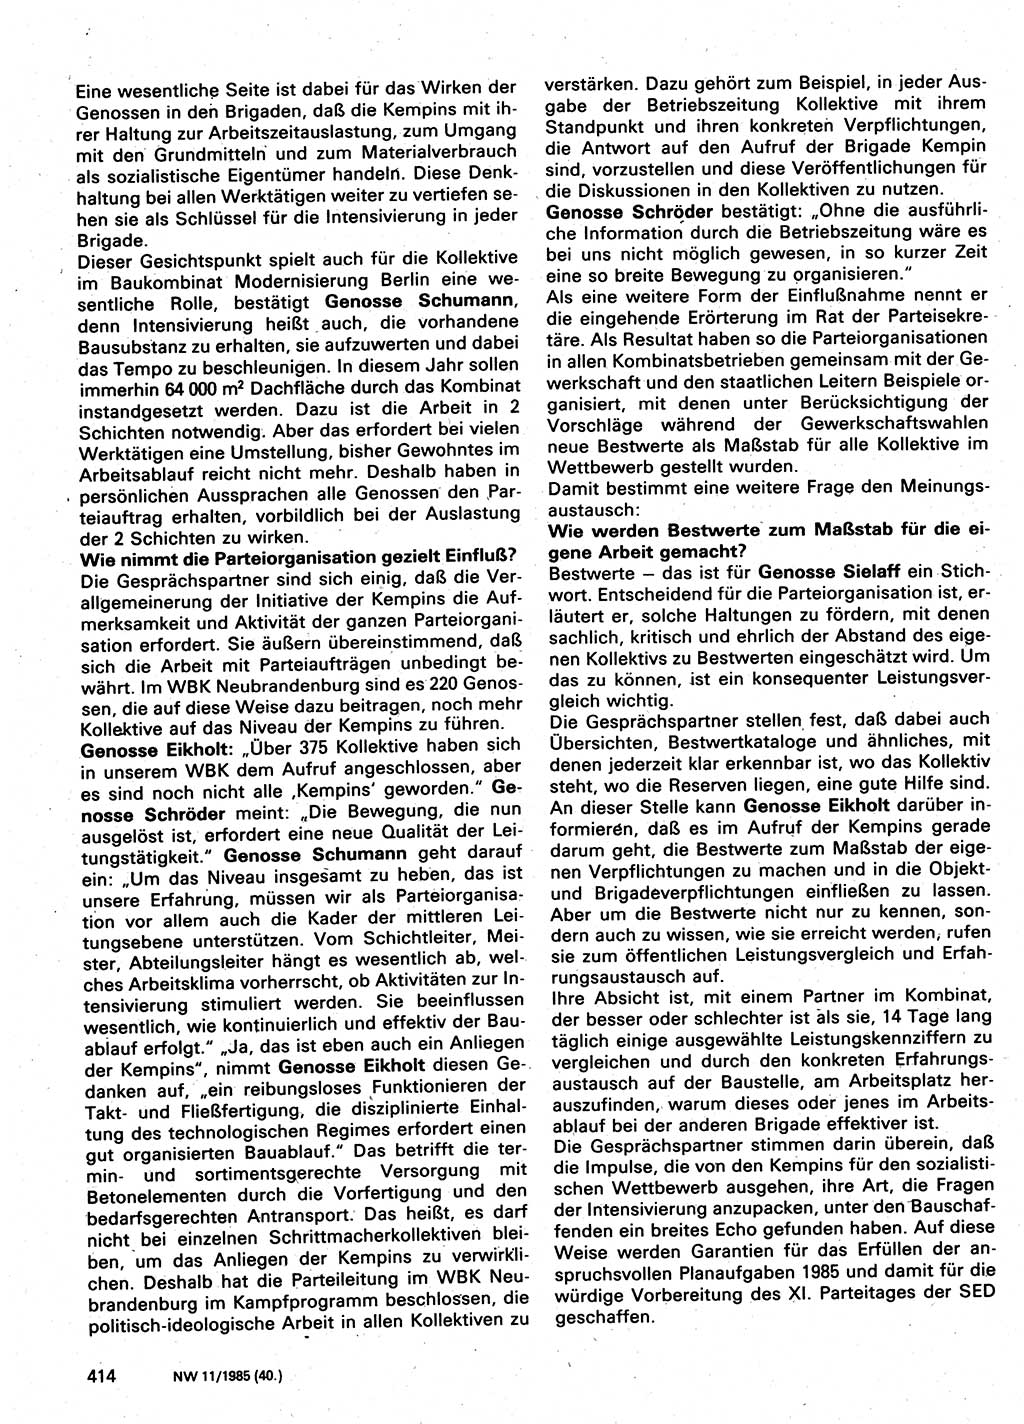 Neuer Weg (NW), Organ des Zentralkomitees (ZK) der SED (Sozialistische Einheitspartei Deutschlands) für Fragen des Parteilebens, 40. Jahrgang [Deutsche Demokratische Republik (DDR)] 1985, Seite 414 (NW ZK SED DDR 1985, S. 414)